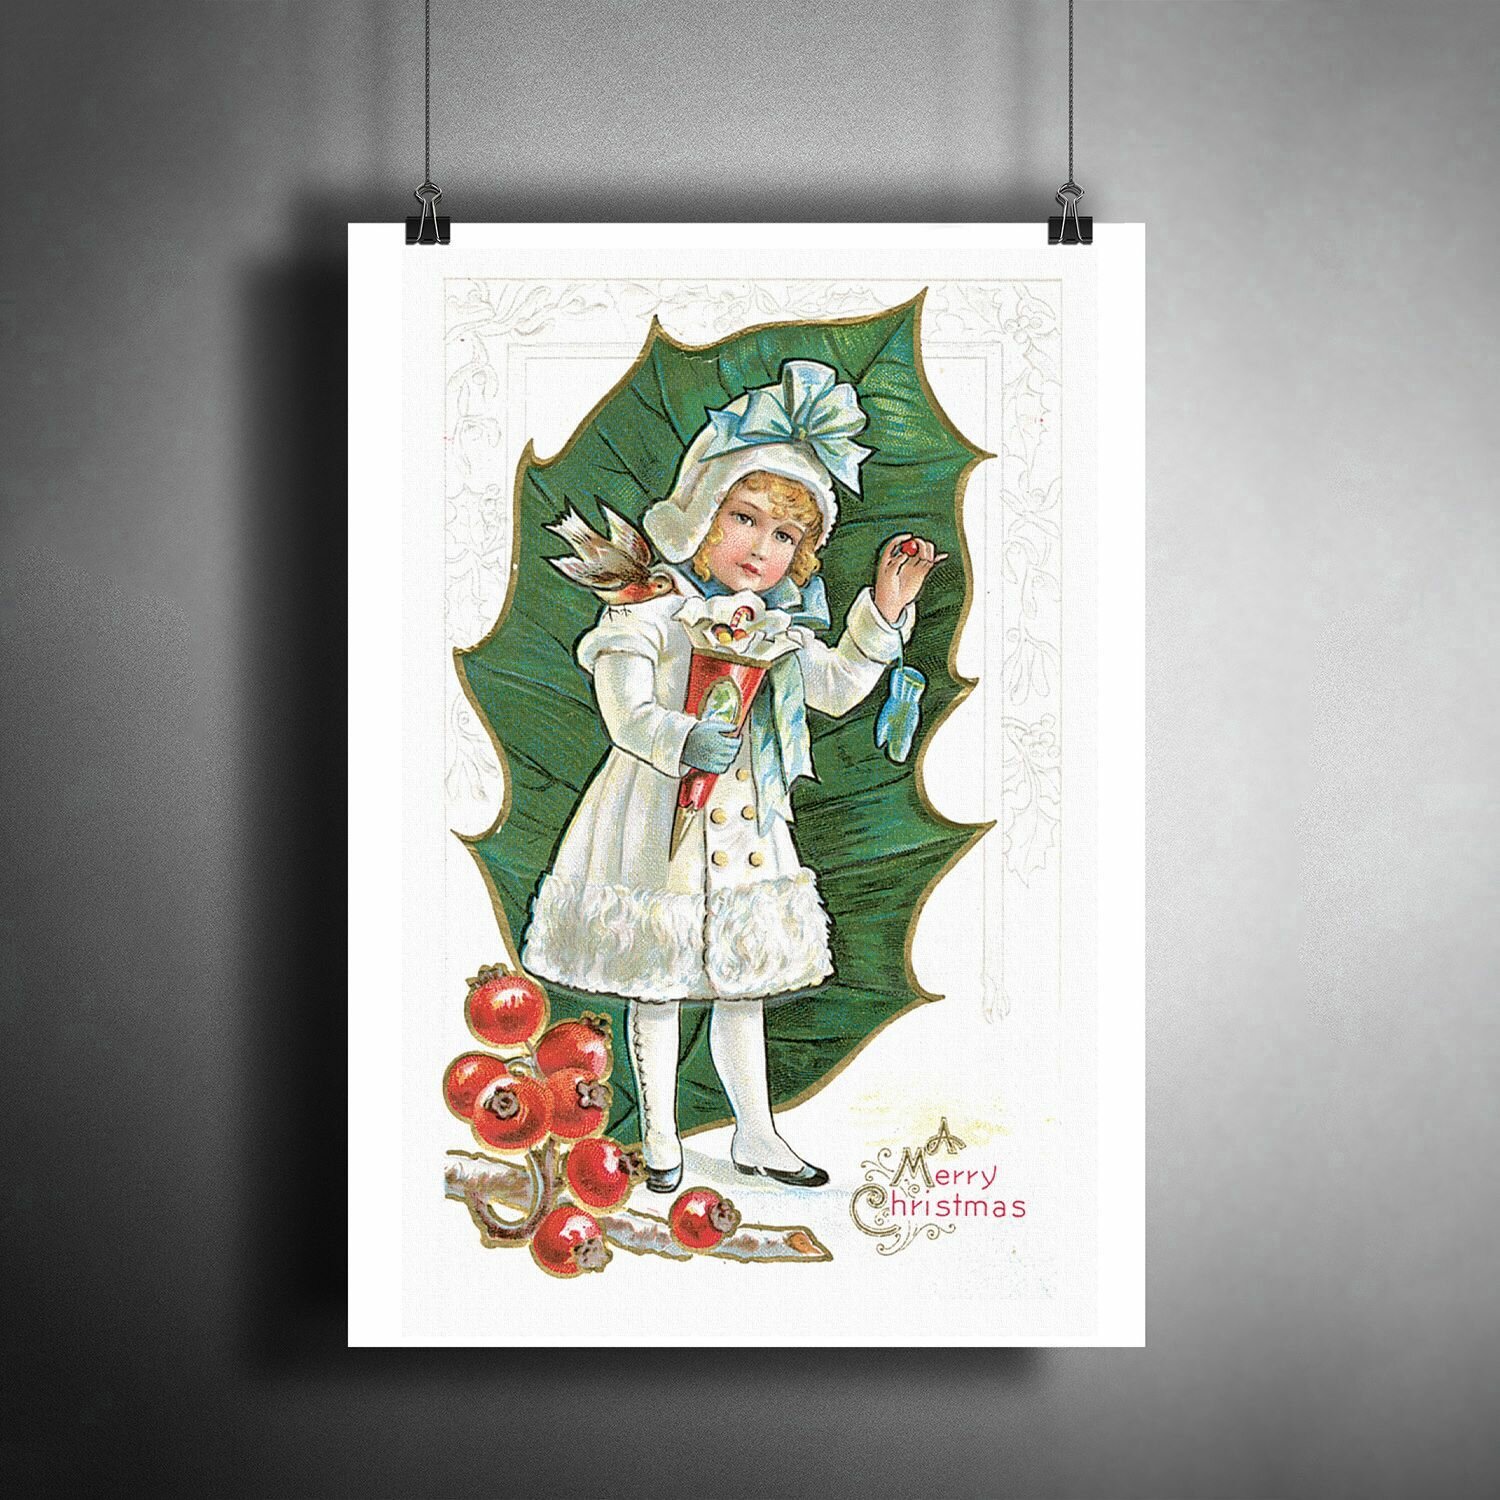 Постер плакат "Новогодний. Merry Christmas" / Декор для дома, офиса, комнаты, квартиры, детской A3 (297 x 420 мм)